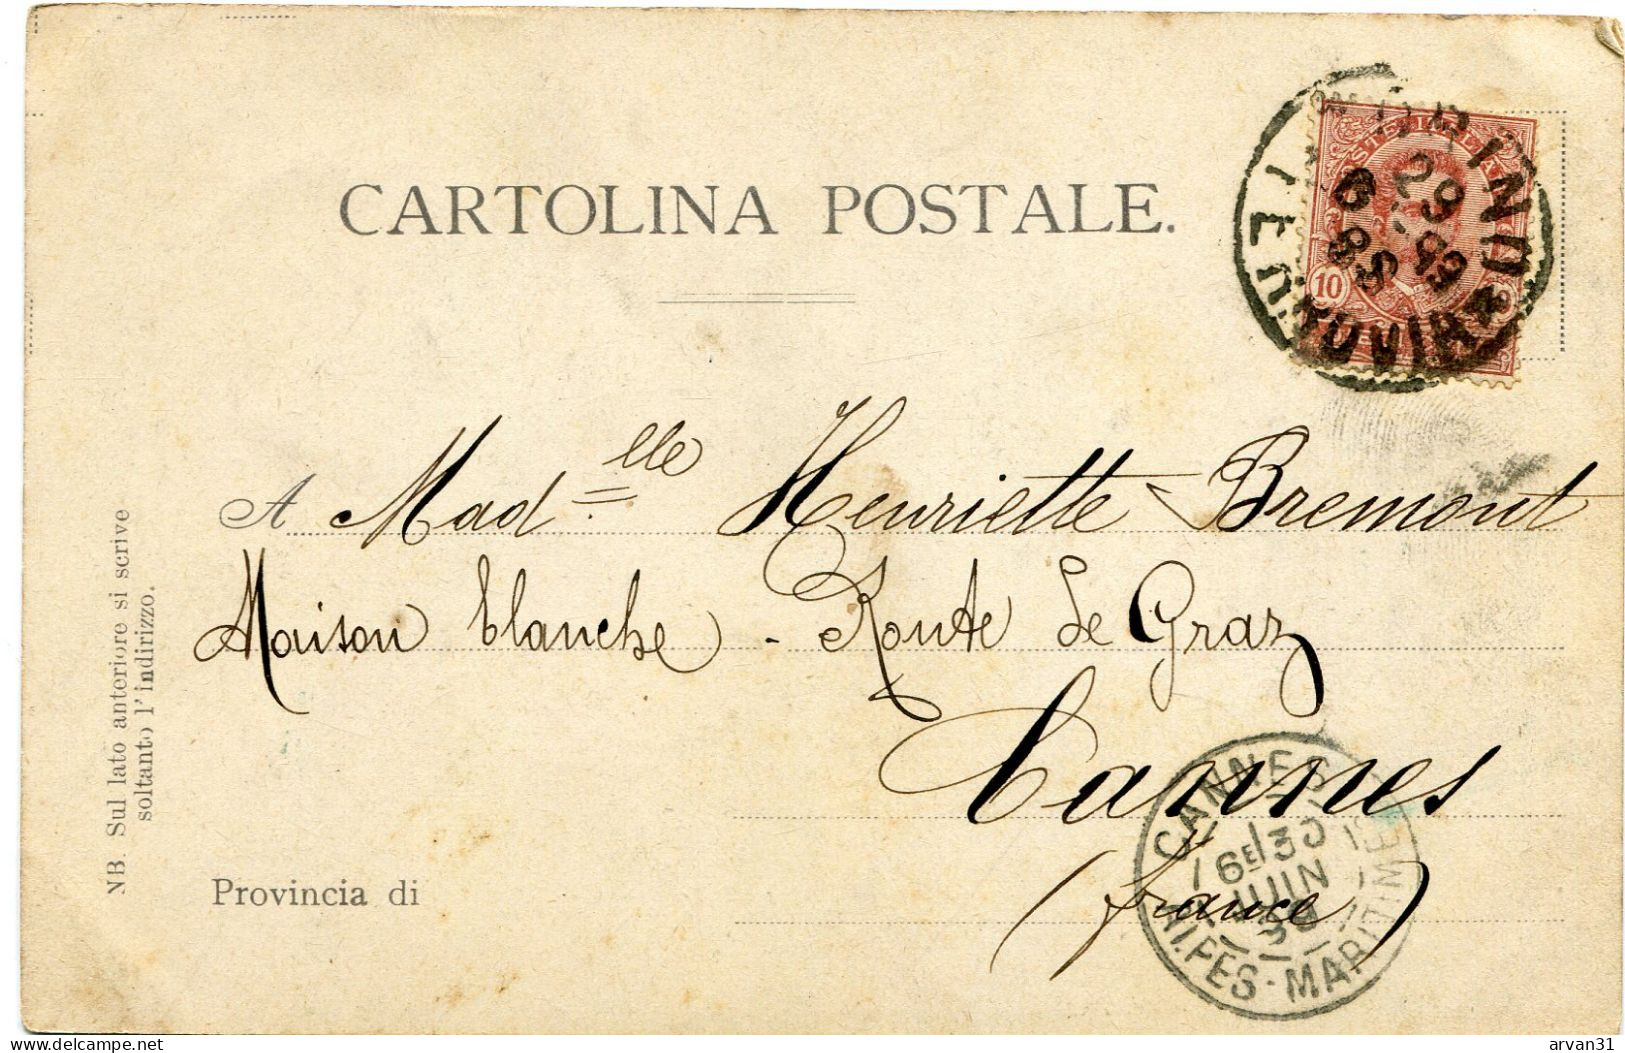 TORINO - RICORDO Di SUPERGA 1 - CARTOLINA PRECURSORE RARO Del 1899 - POSSIBILITÀ DI SCONTO E SPEDIZIONE GRATUITA - - Tarjetas Panorámicas